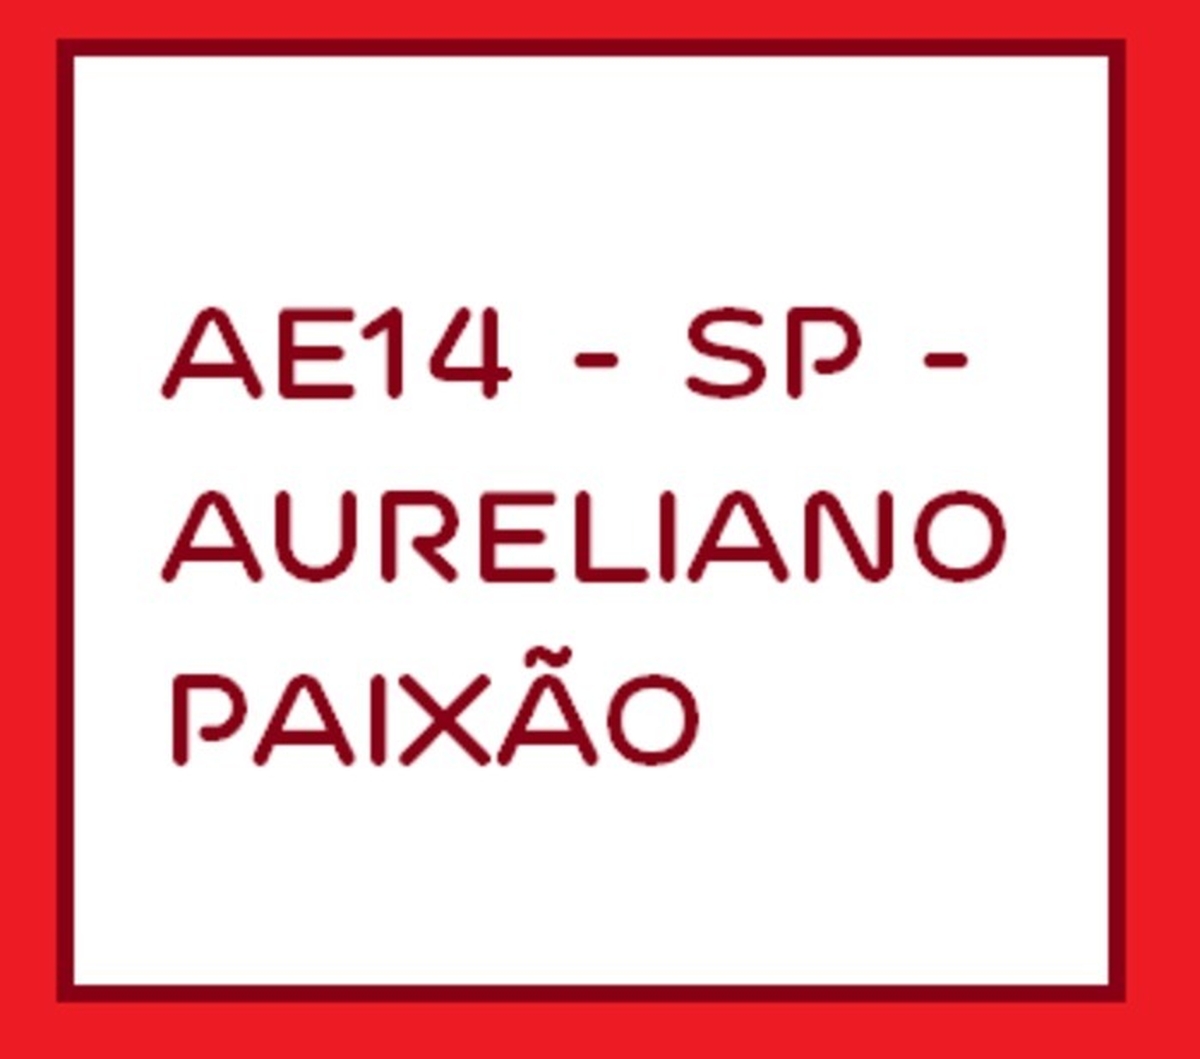 AE14 - SP - Aureliano Paixão